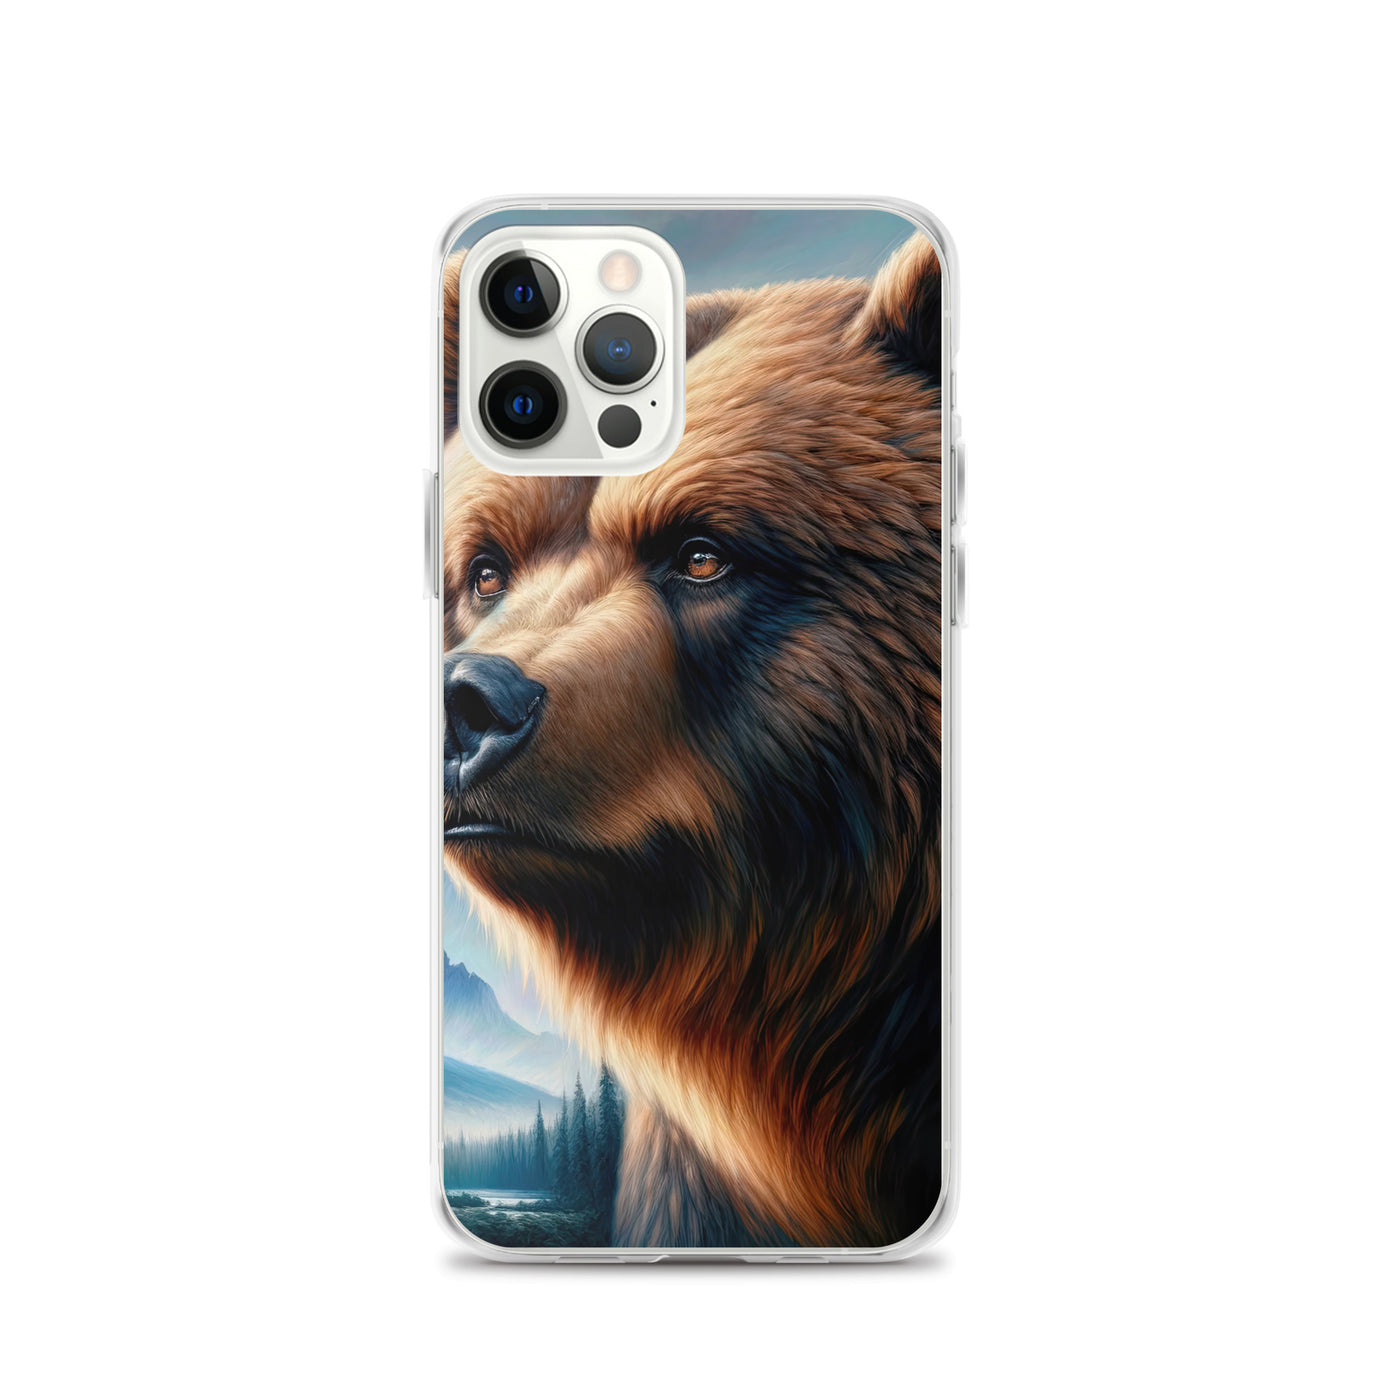 Ölgemälde, das das Gesicht eines starken realistischen Bären einfängt. Porträt - iPhone Schutzhülle (durchsichtig) camping xxx yyy zzz iPhone 12 Pro